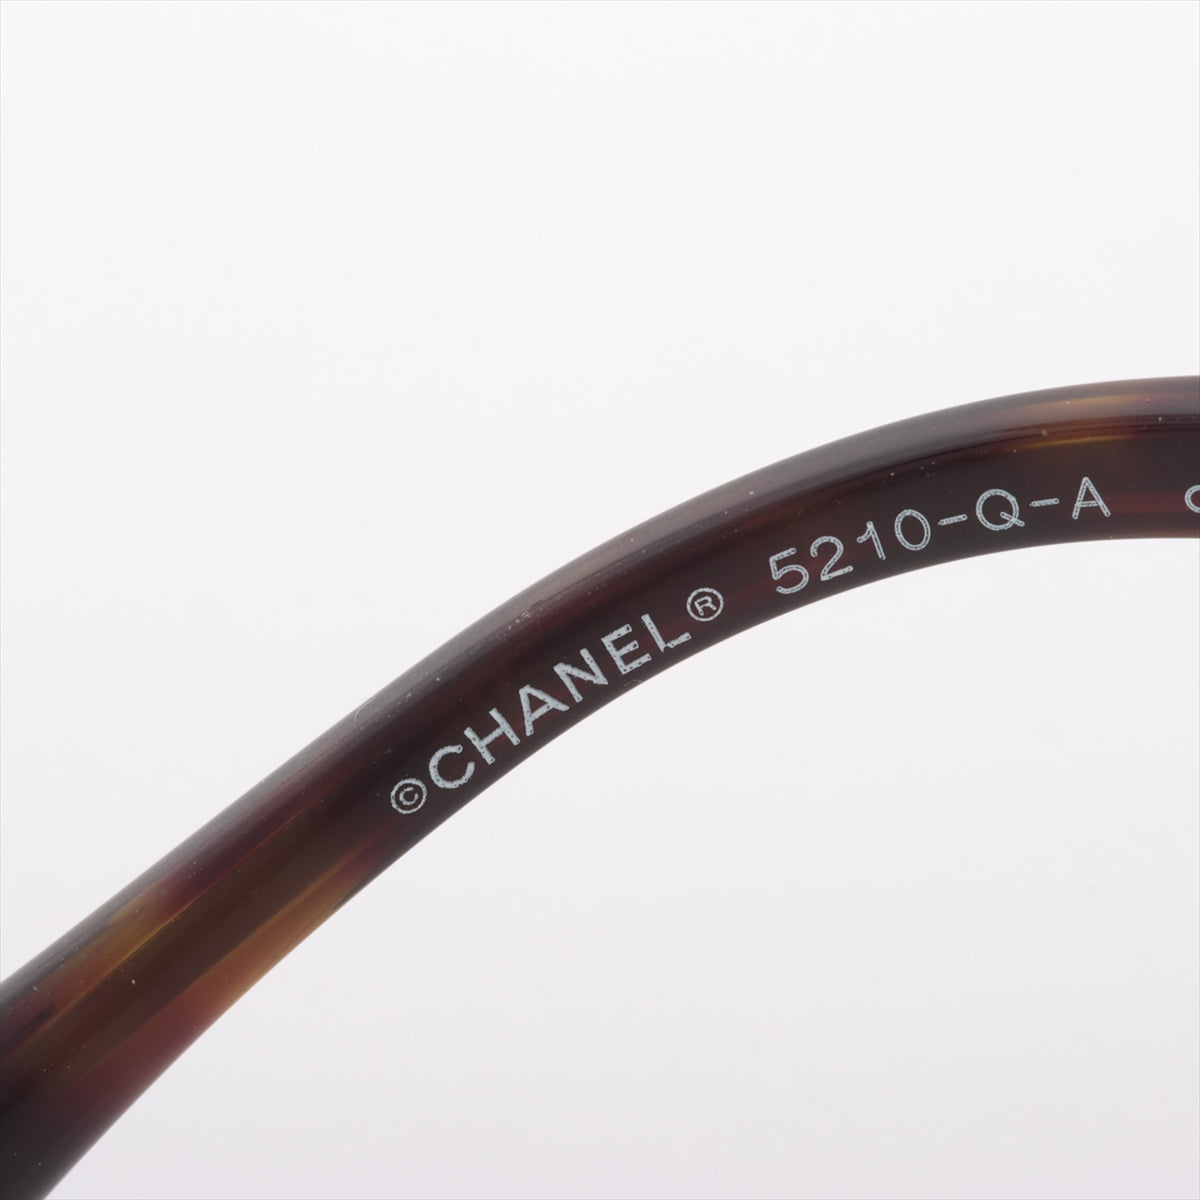 シャネル 5210-Q-A ココマーク サングラス GP×プラスチック ブラック×ブラウン